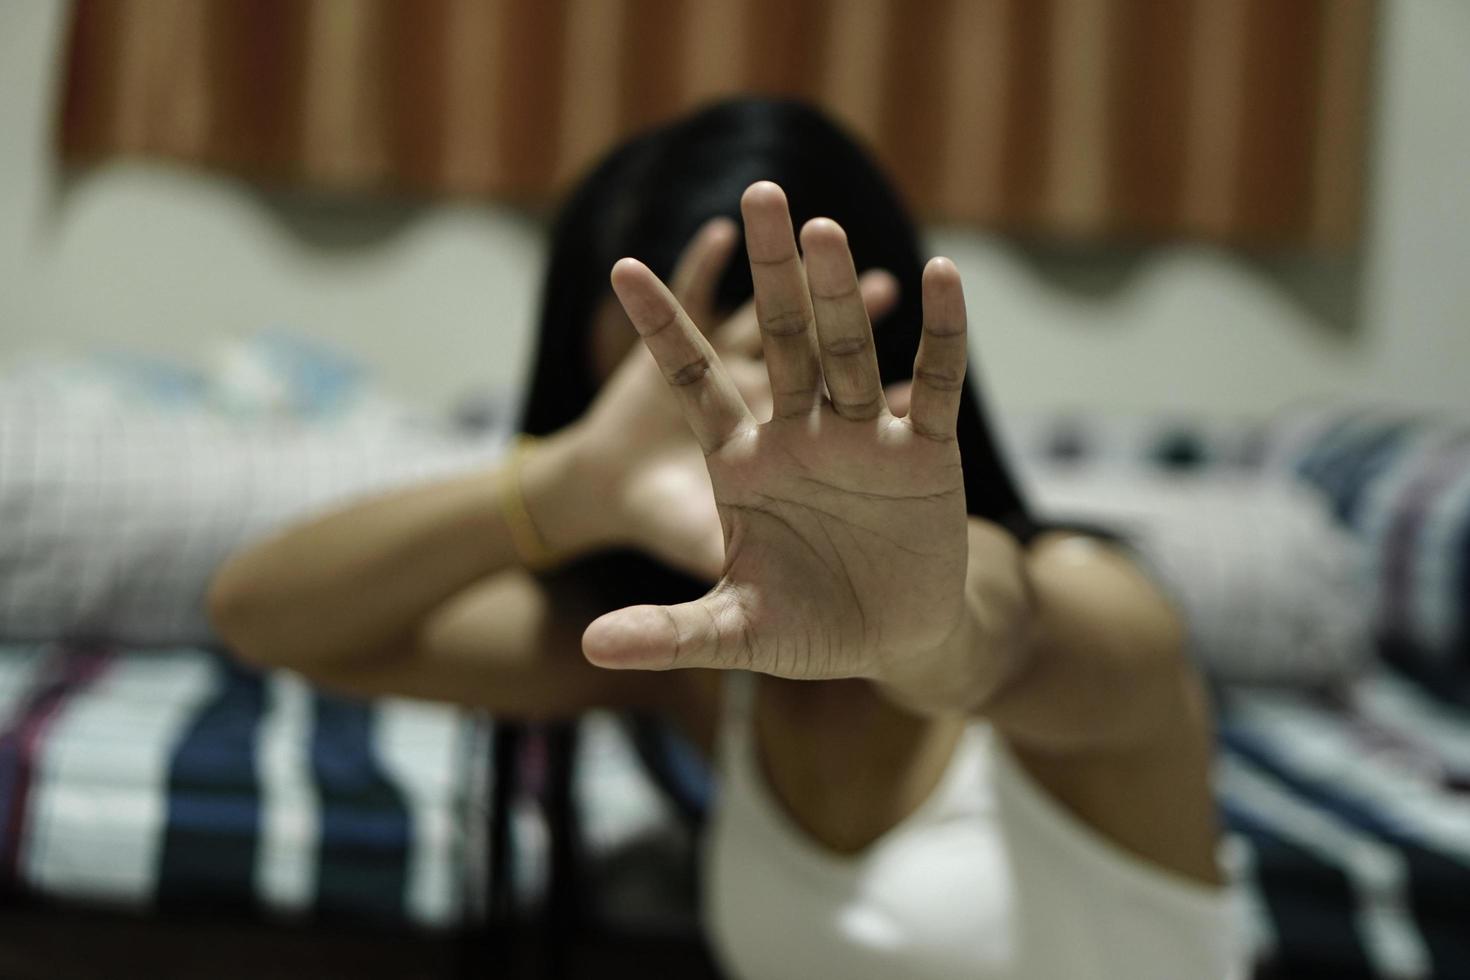 Frau hob ihre Hand, um davon abzubringen, Kampagne stoppt Gewalt gegen Frauen, Handfokus, Vintage-Ton foto